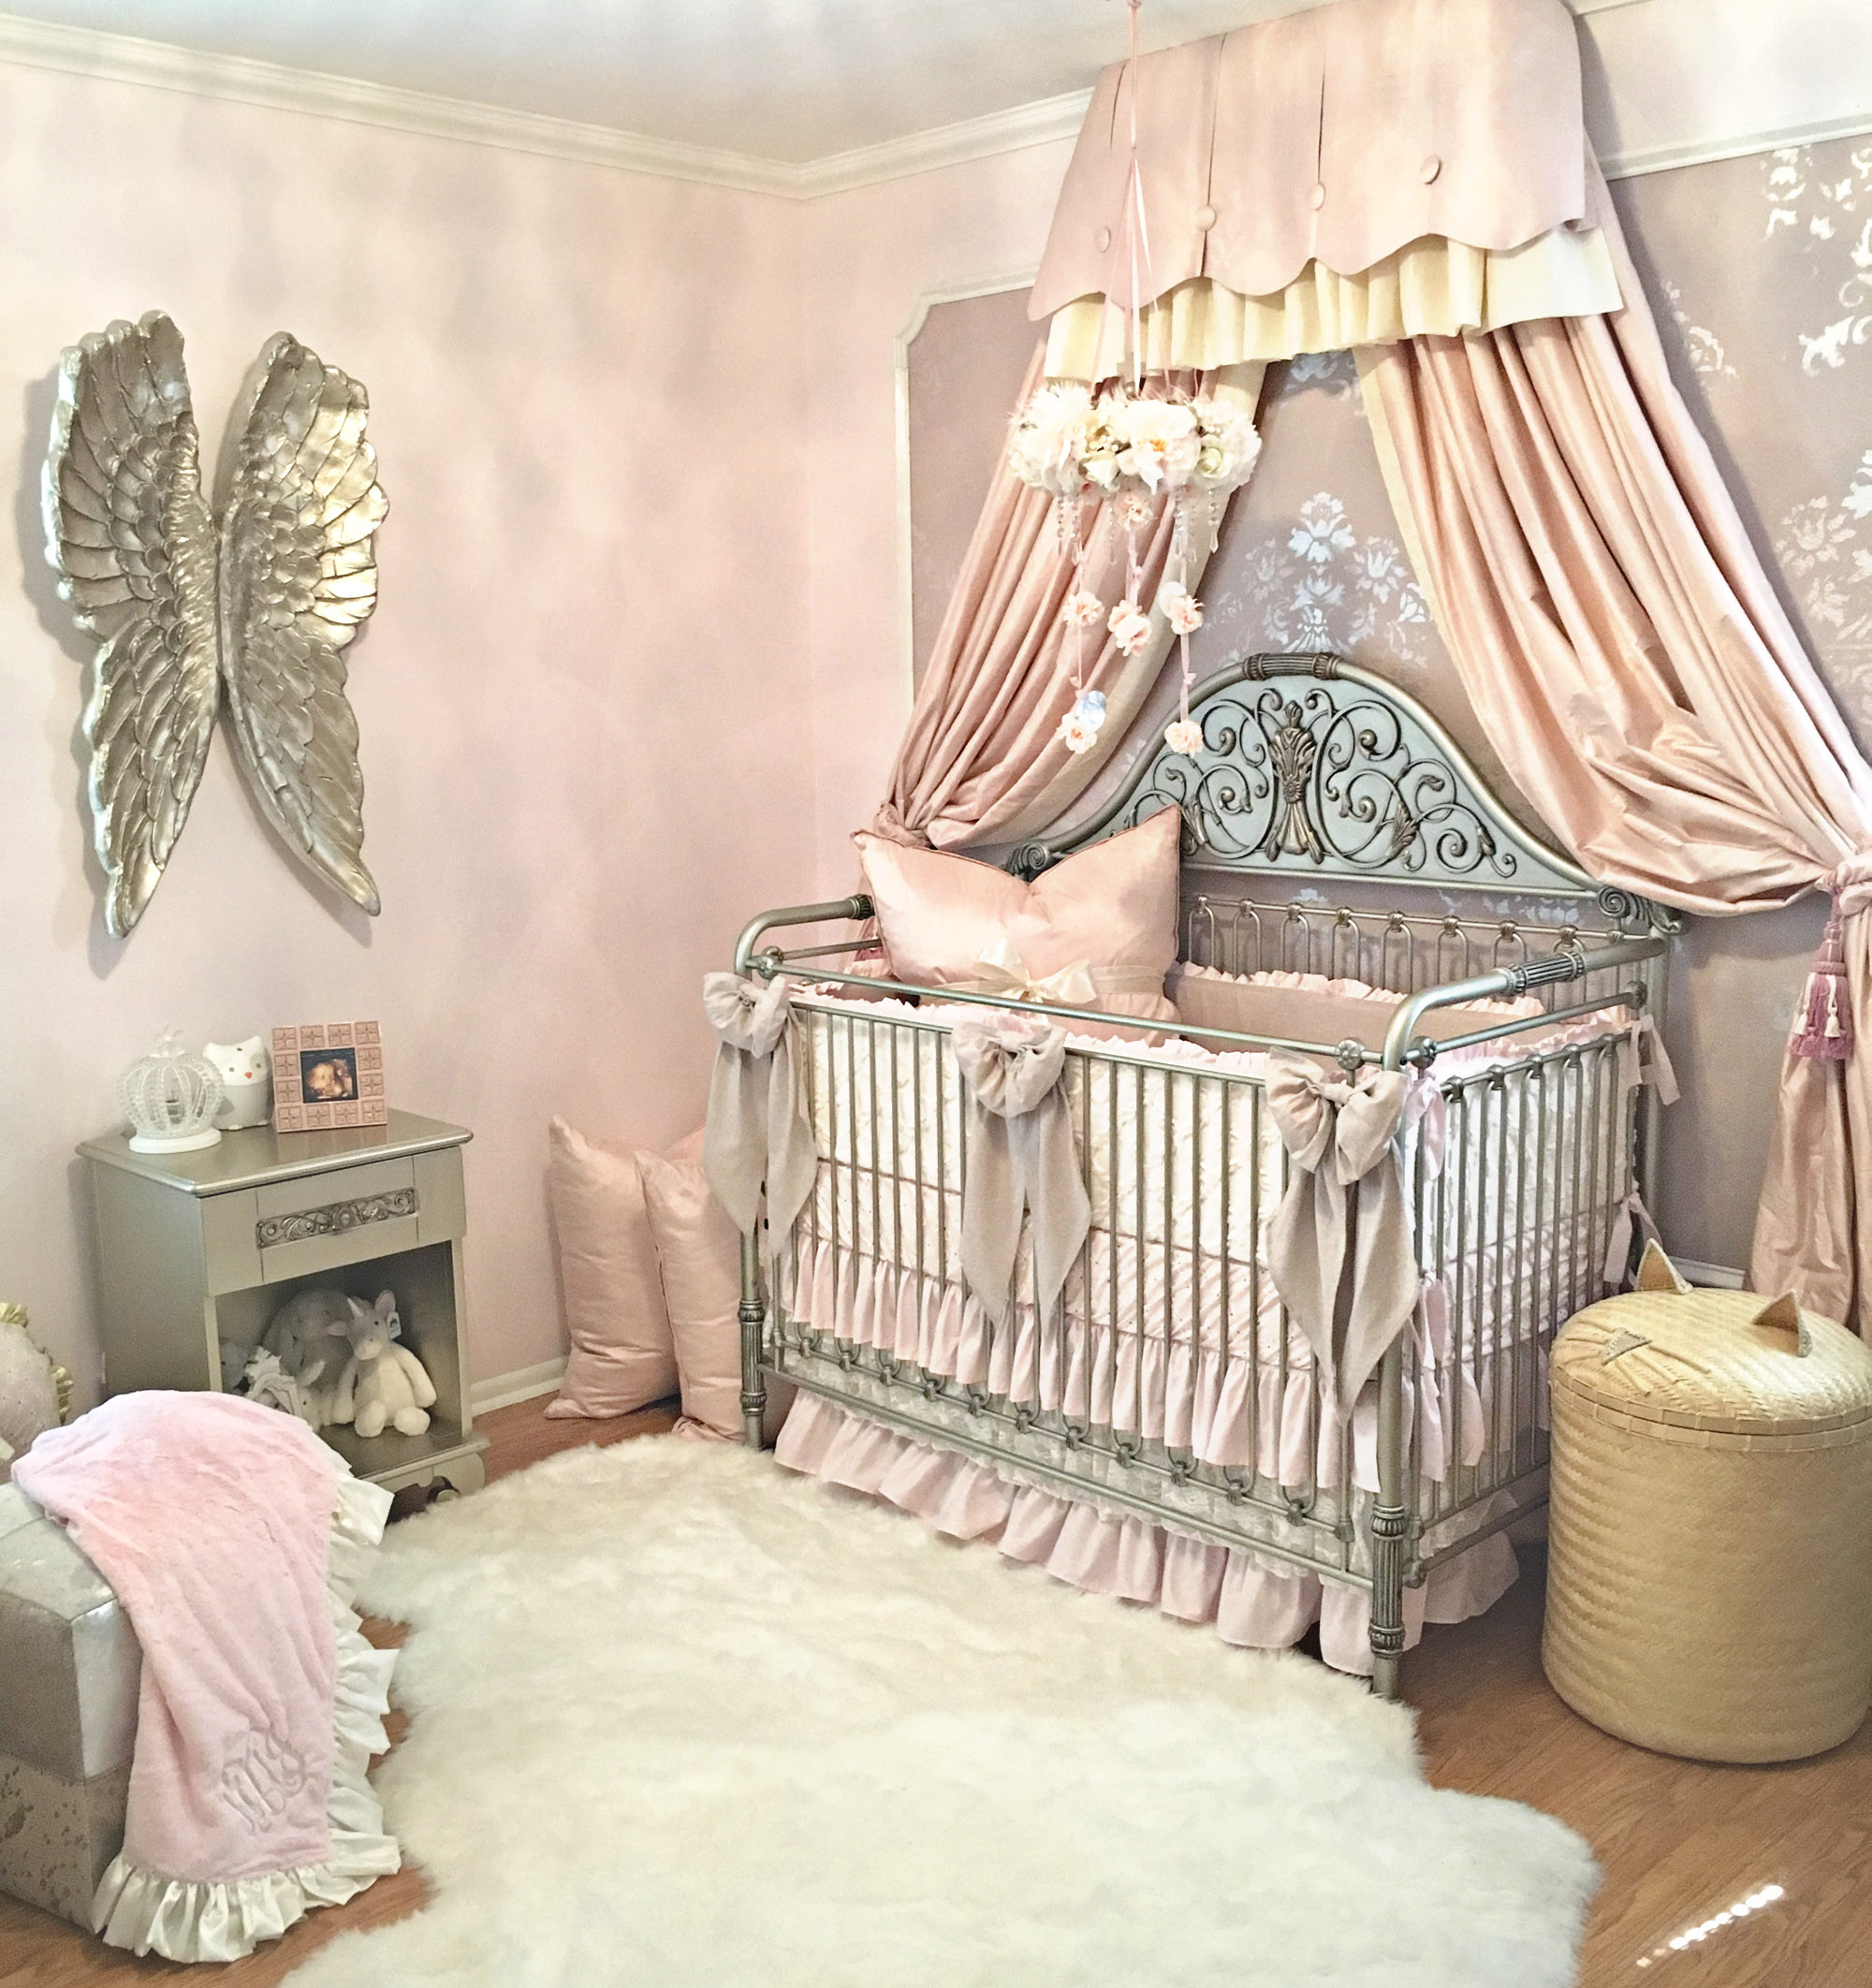 Vintage Baby Nursery Decor
 Harlow s Vintage Glam Blush Nursery Project Nursery